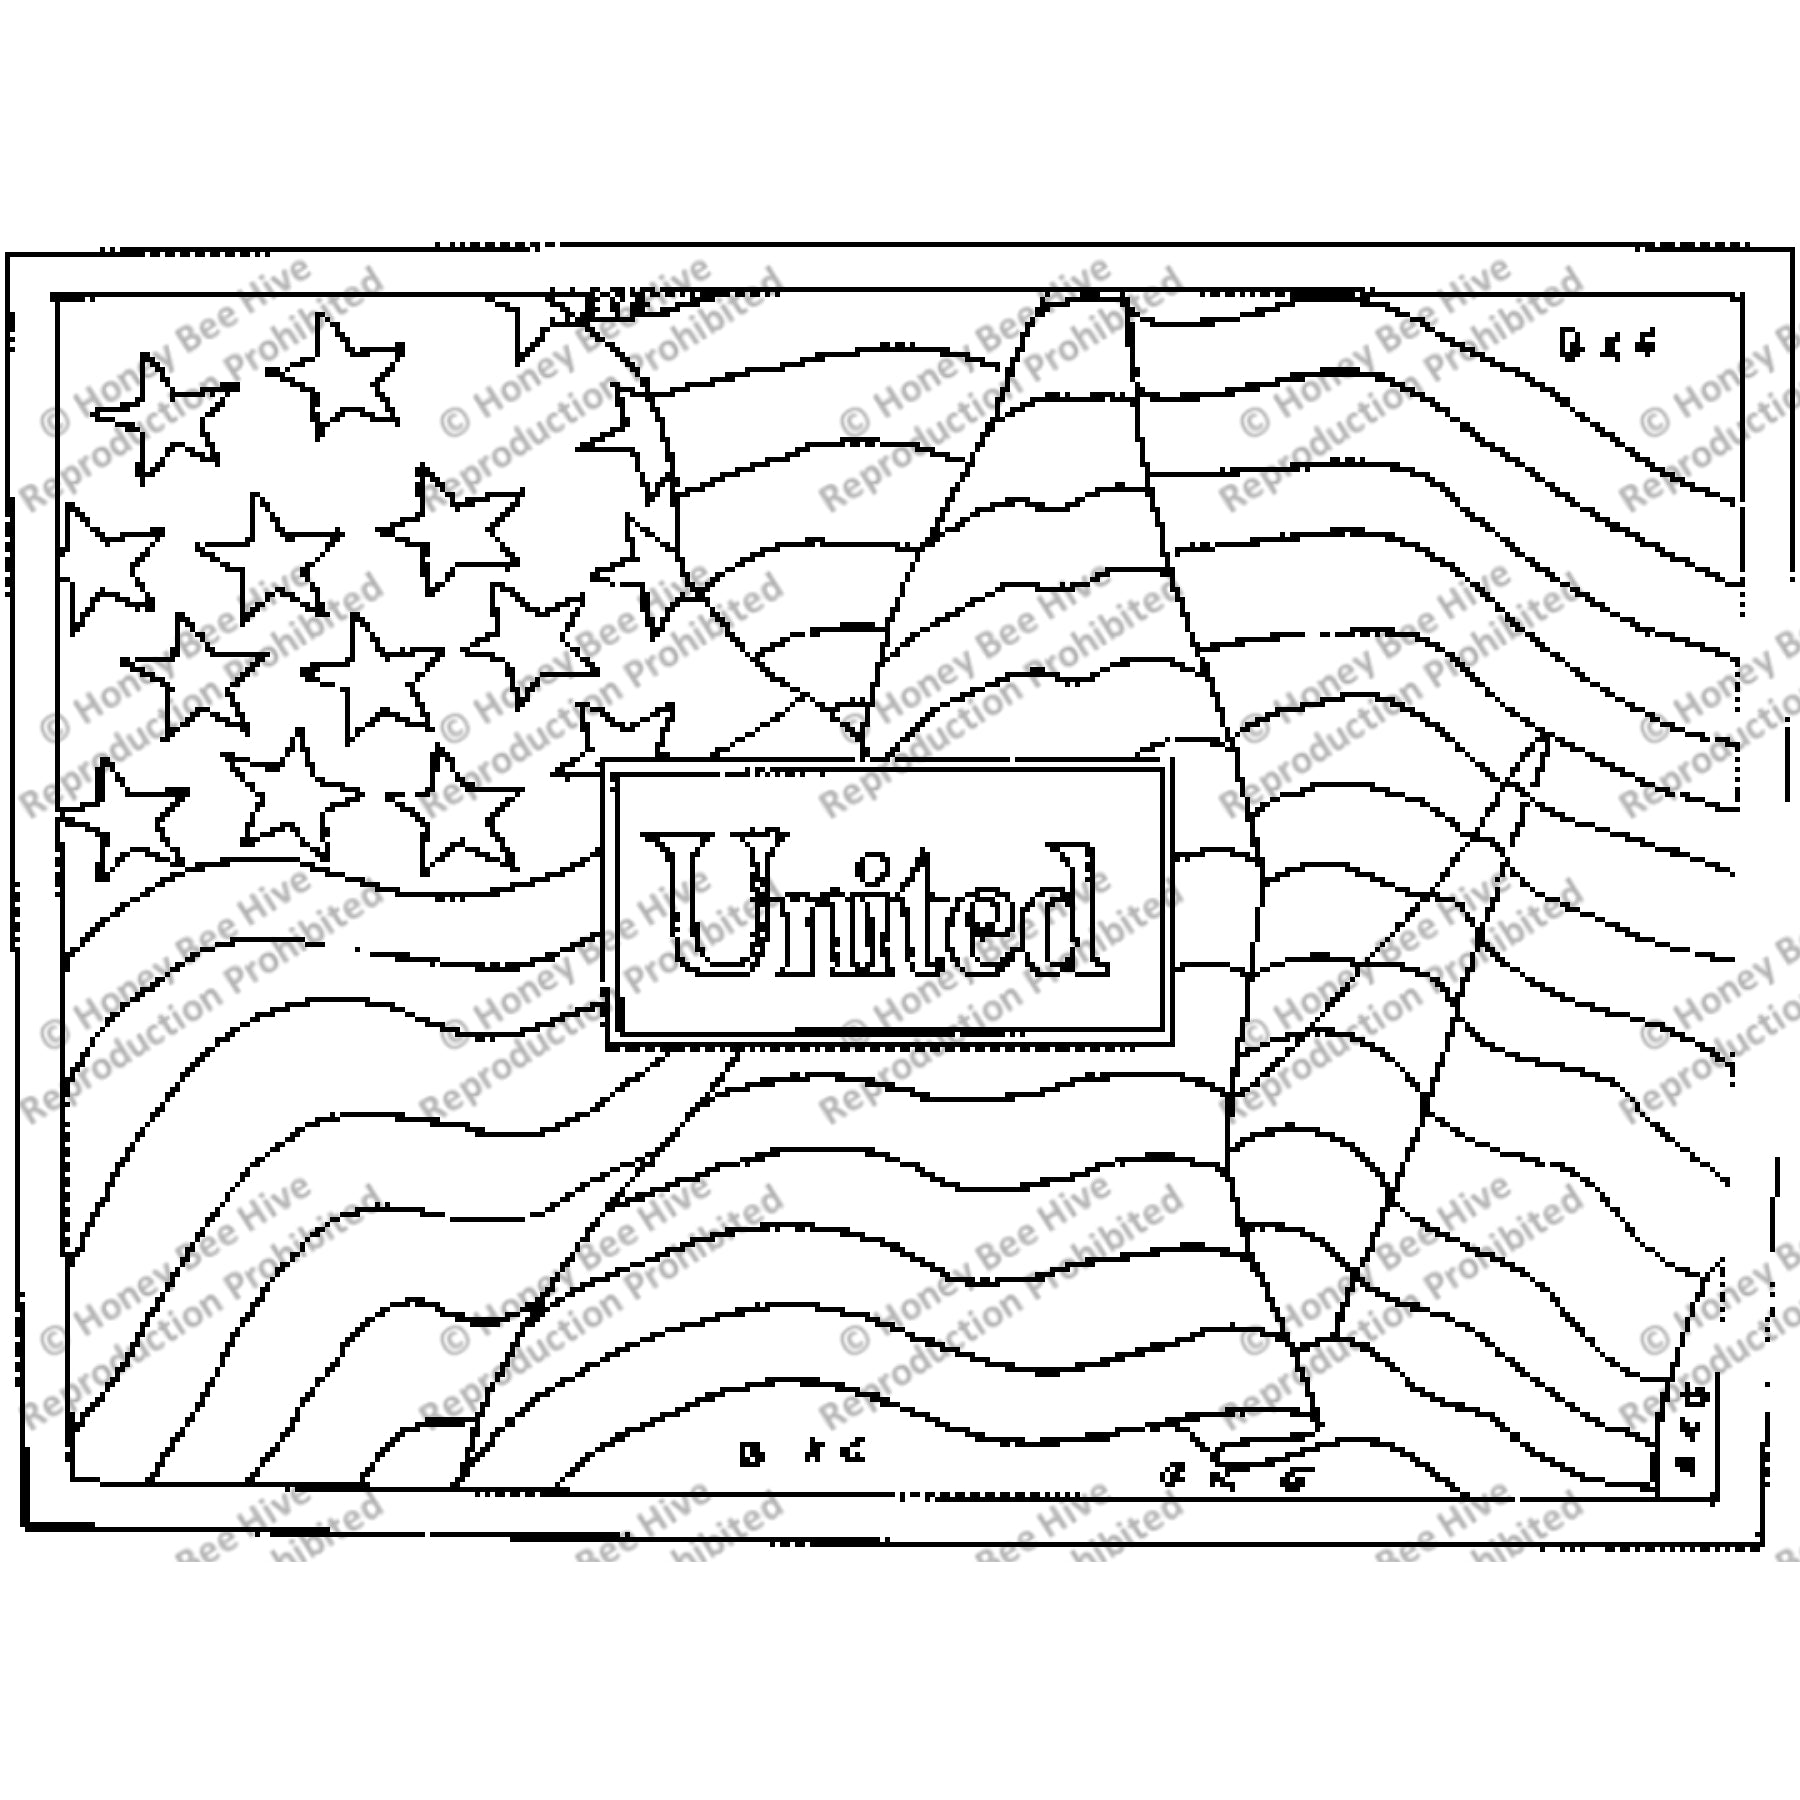 United, rug hooking pattern